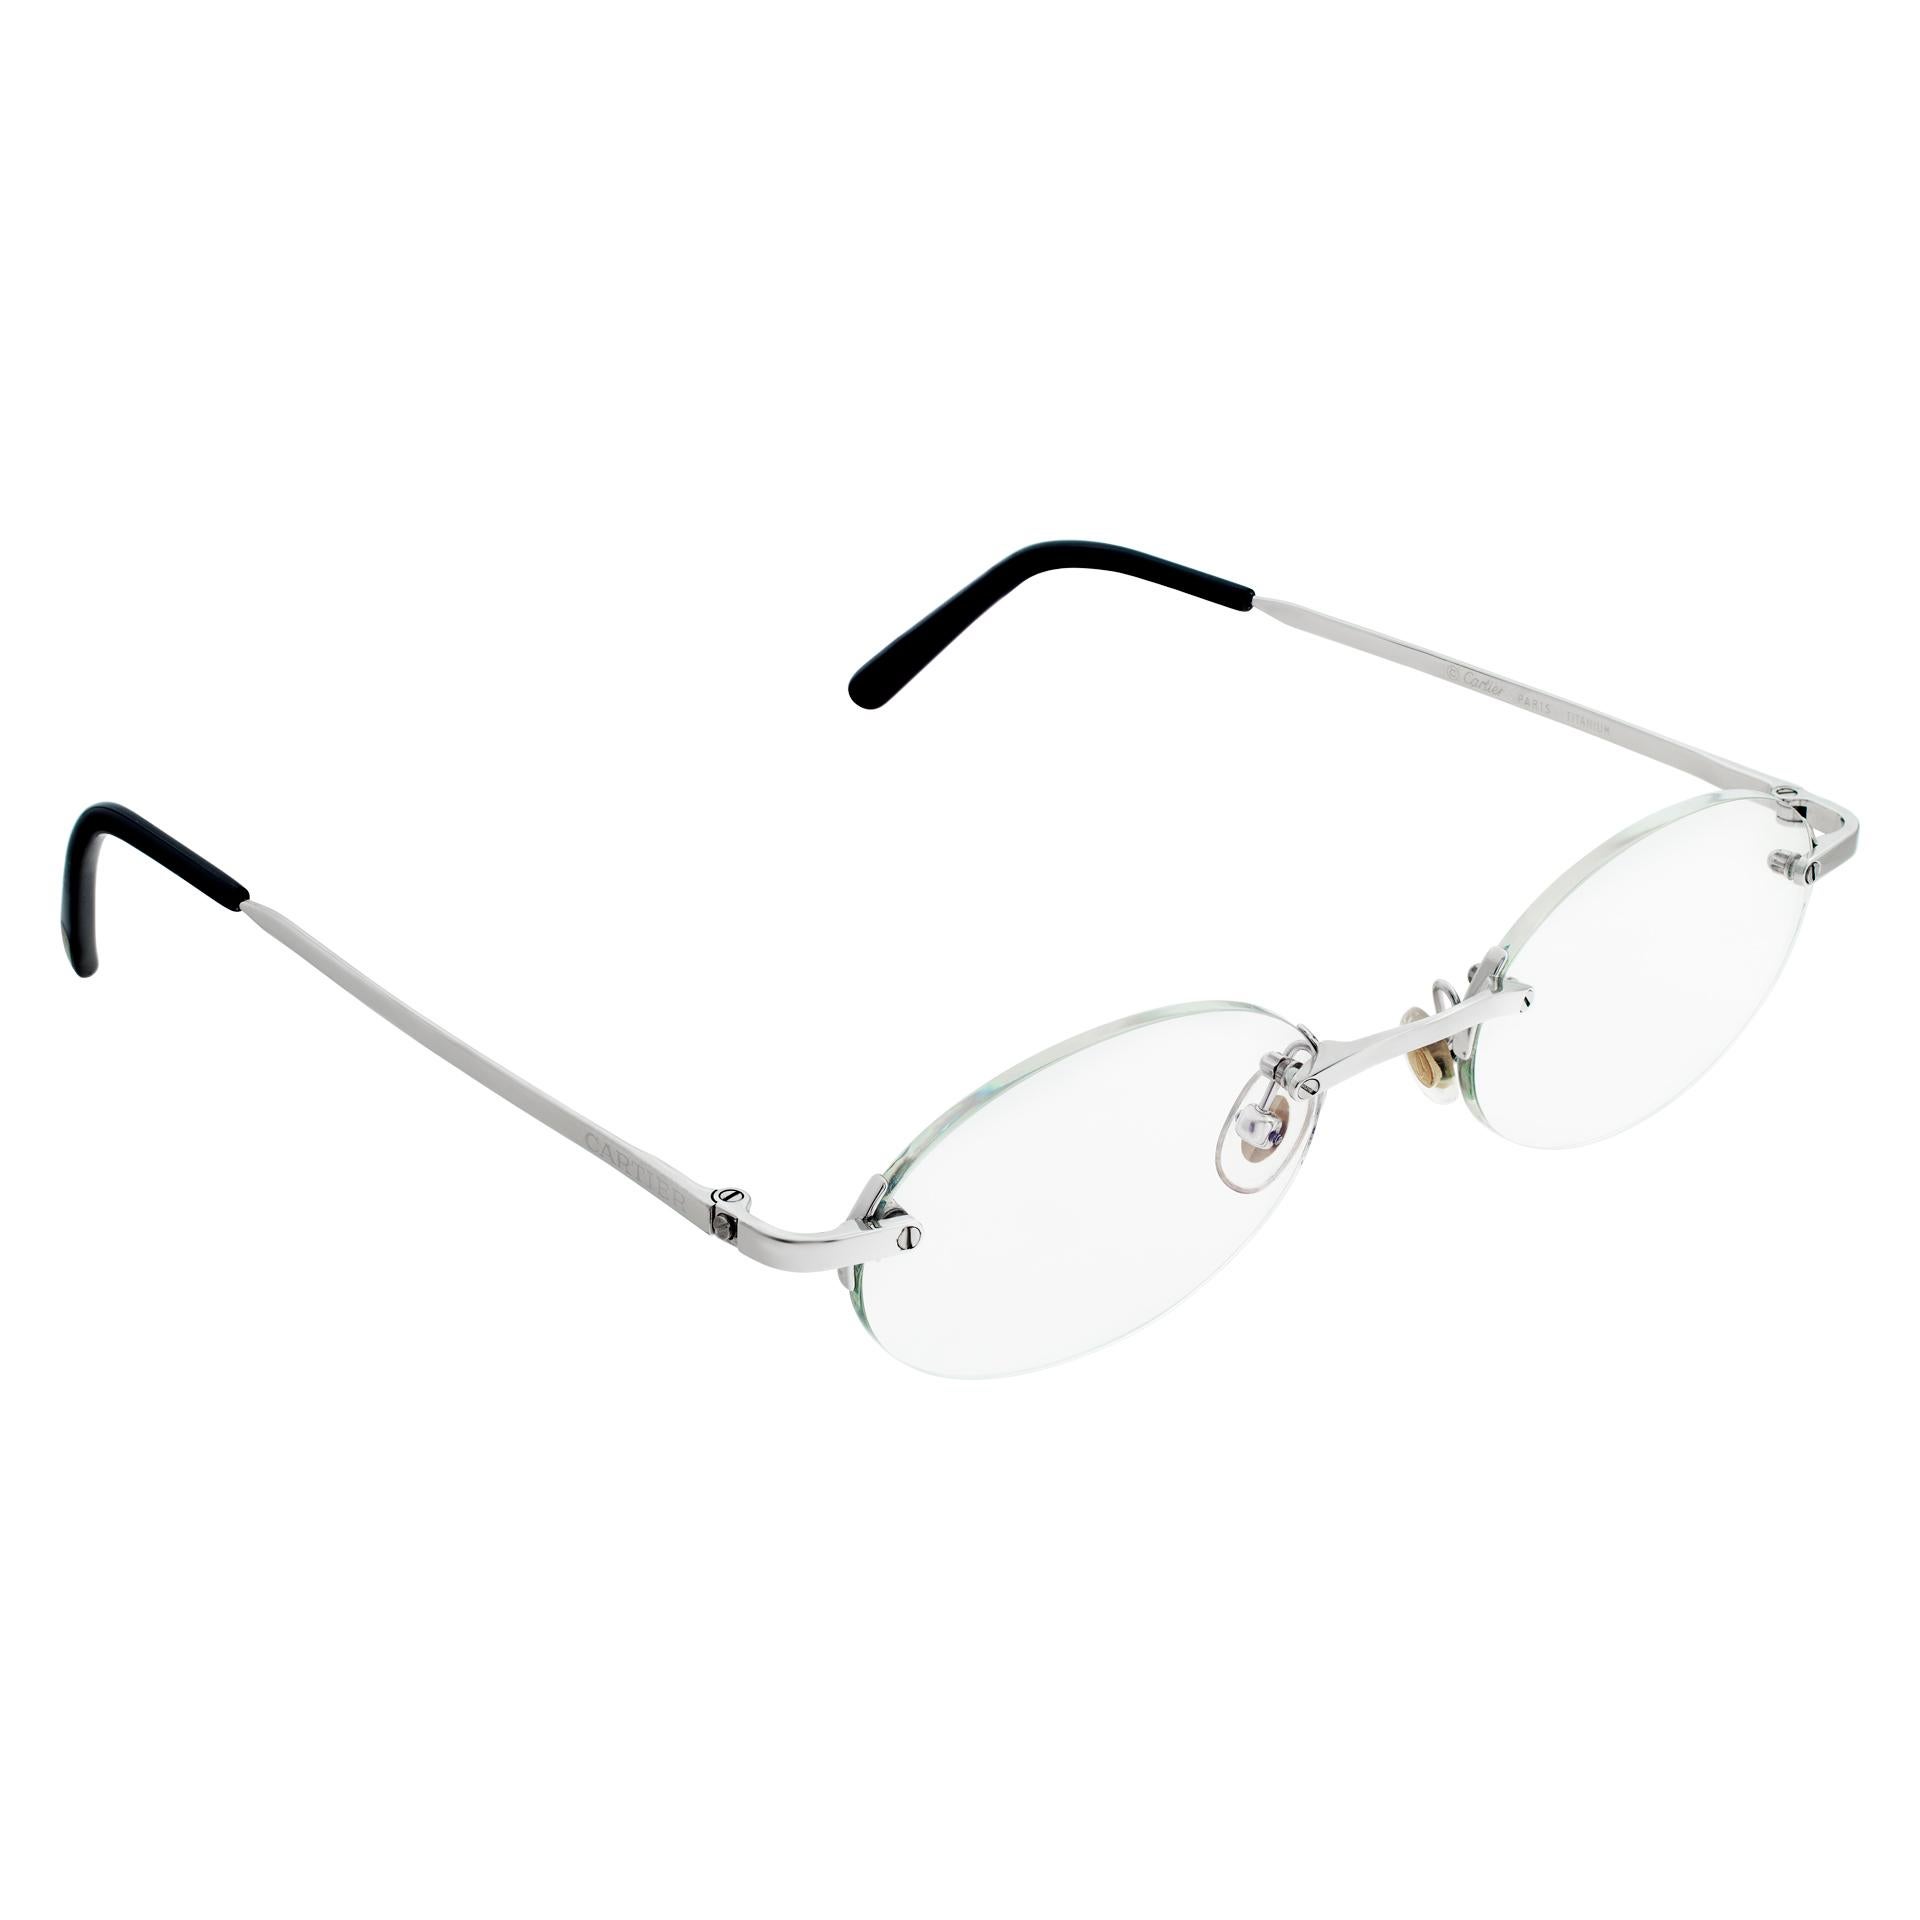 Ovale, randlose Cartier-Brille aus Titan. Gläserbreite 50 mm, Steg 19 mm, Bügellänge 135 mm. Kommt mit Originalverpackung.
